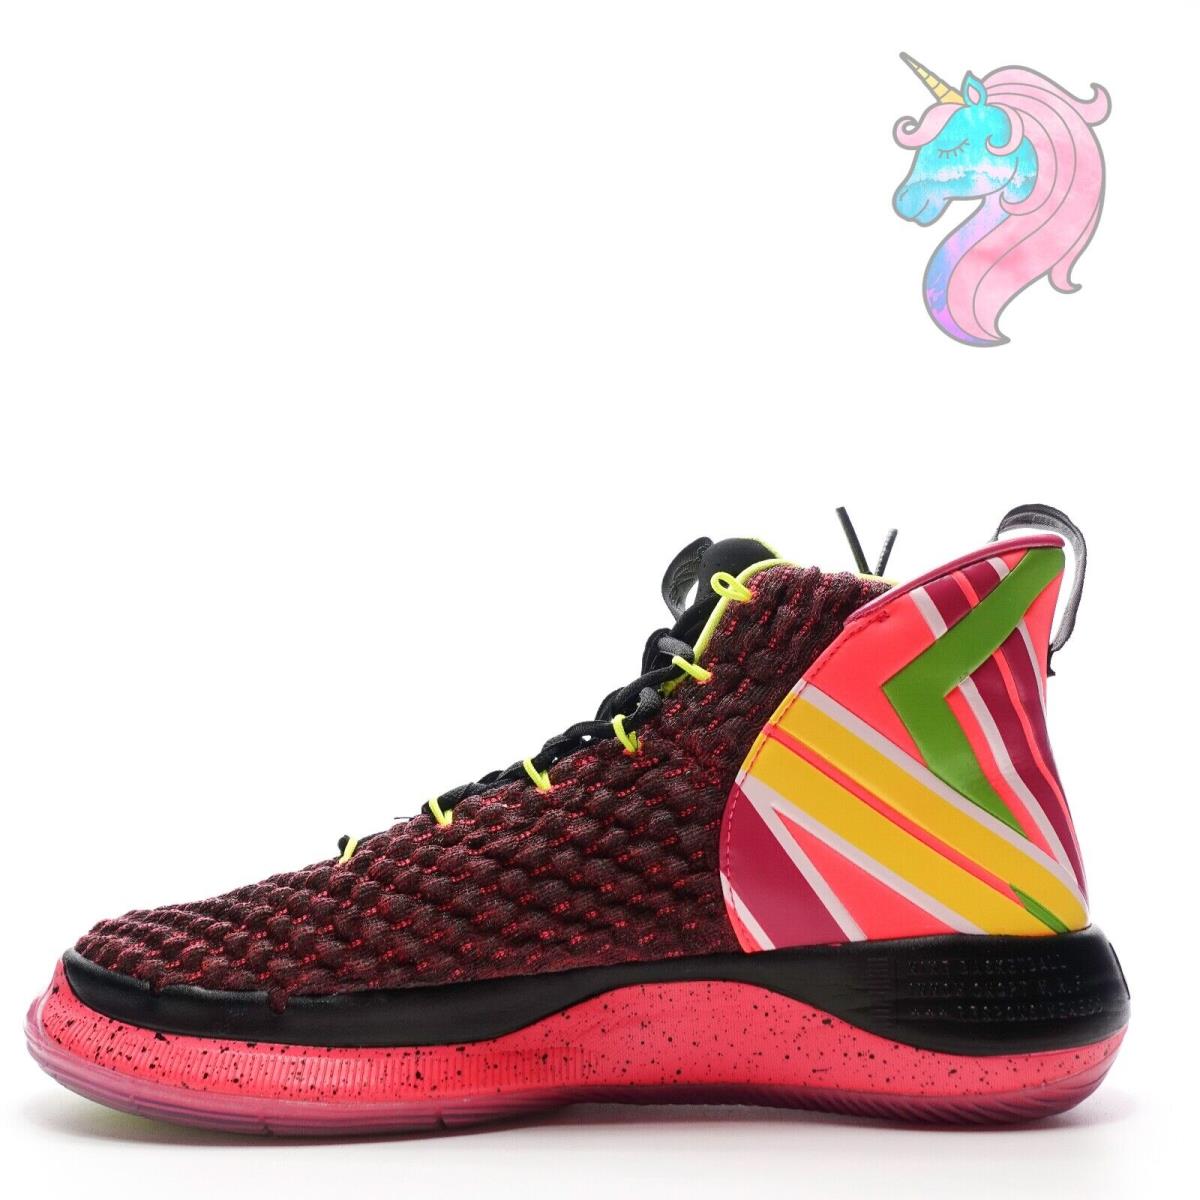 Nike Alphadunk Hoverboard Racer Pink Volt Black Shoes BQ5401-600 Mens Size 10.5 | 883212282033 - Nike shoes - Pink SporTipTop